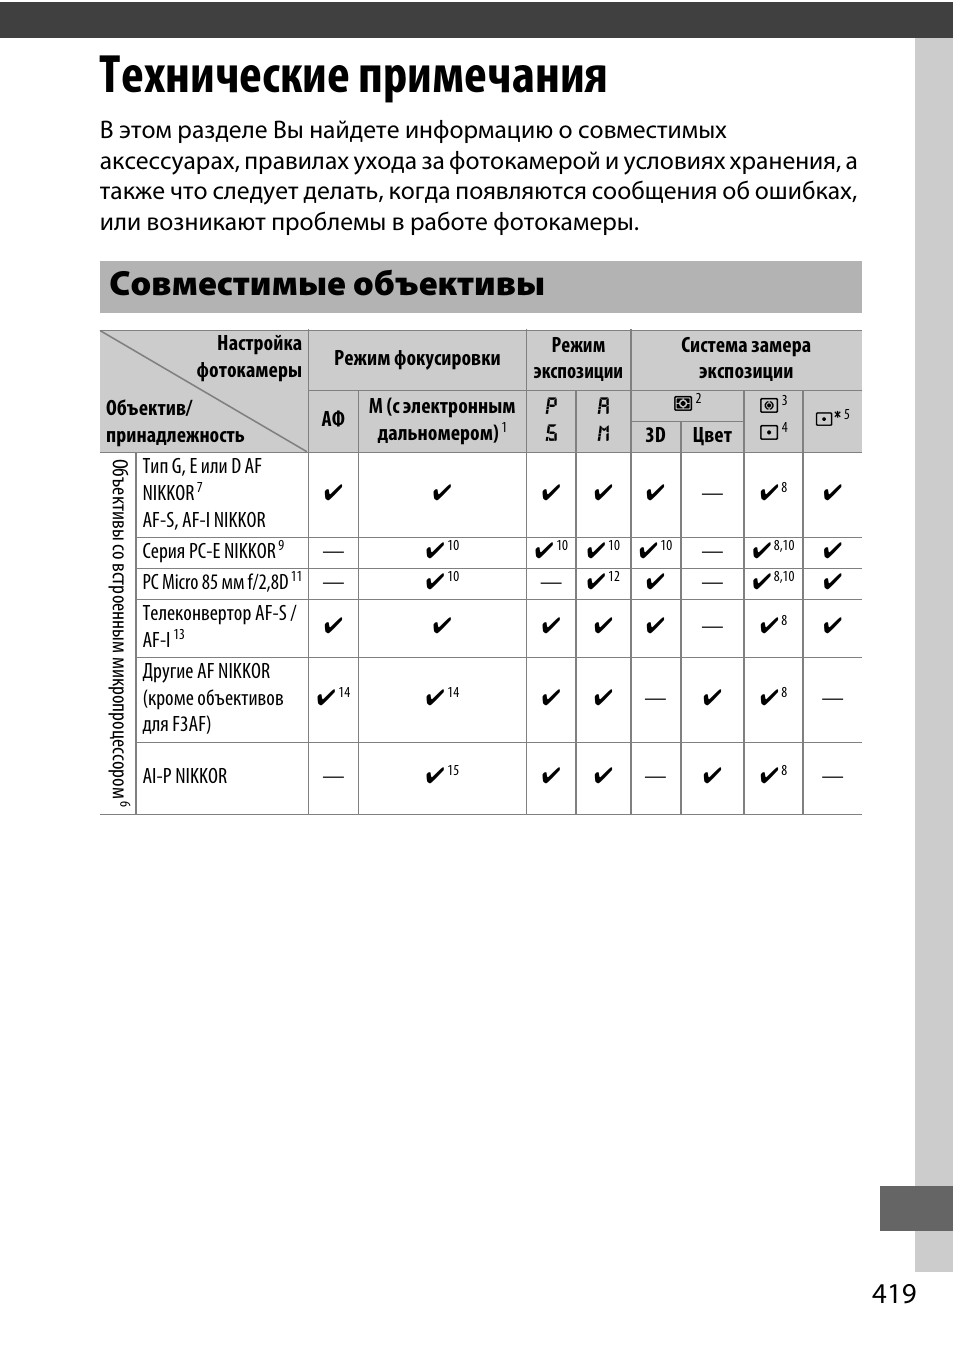 Технические примечания, Совместимые объективы | Инструкция по эксплуатации Nikon D810 | Страница 443 / 533